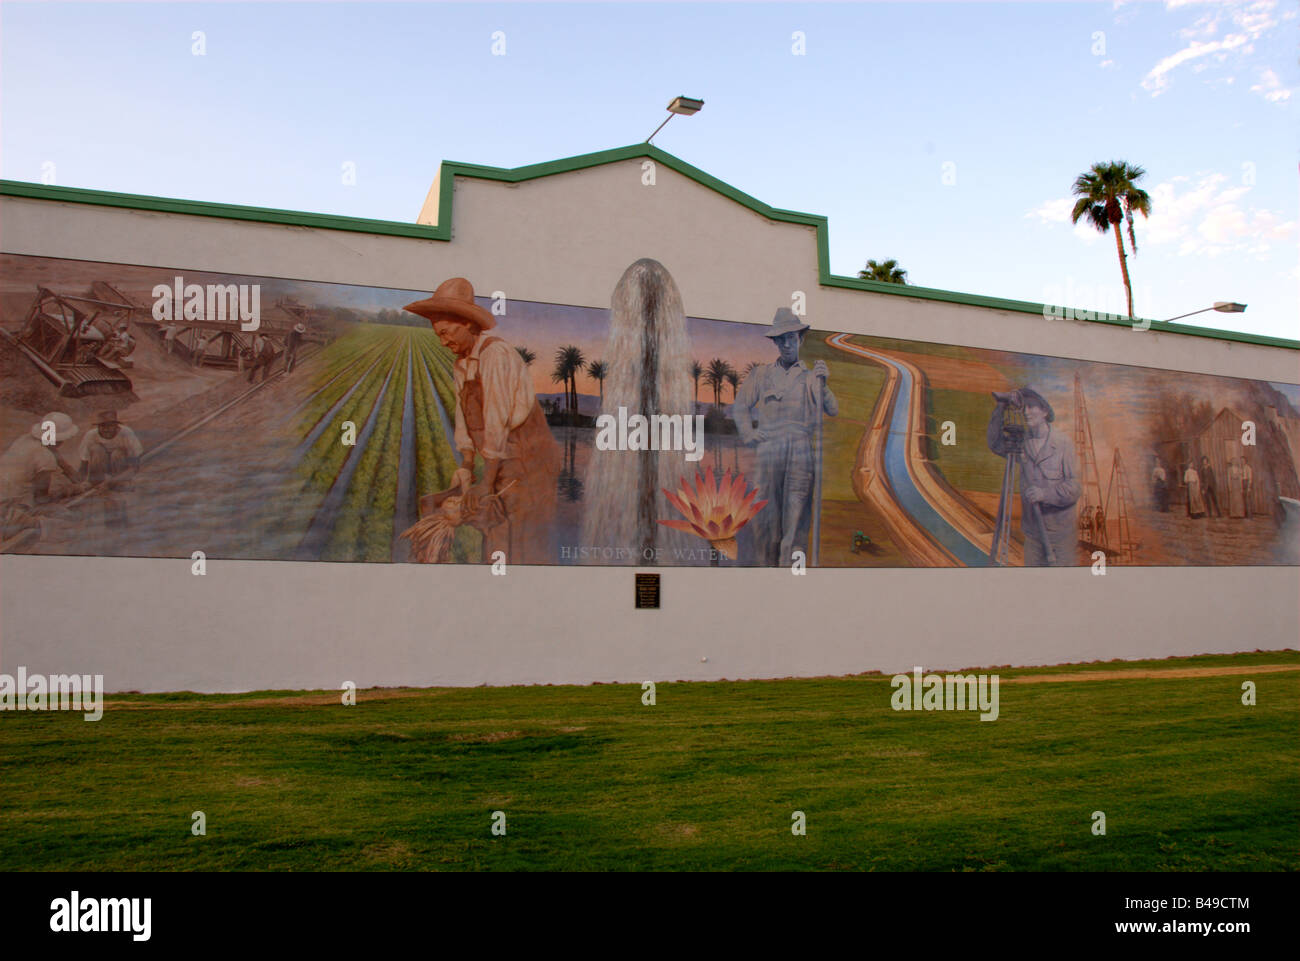 "Geschichte des Wassers" historische Wandbild Programm, gemeinschaftliches Kunstprojekt, Indio, Kalifornien, USA Stockfoto